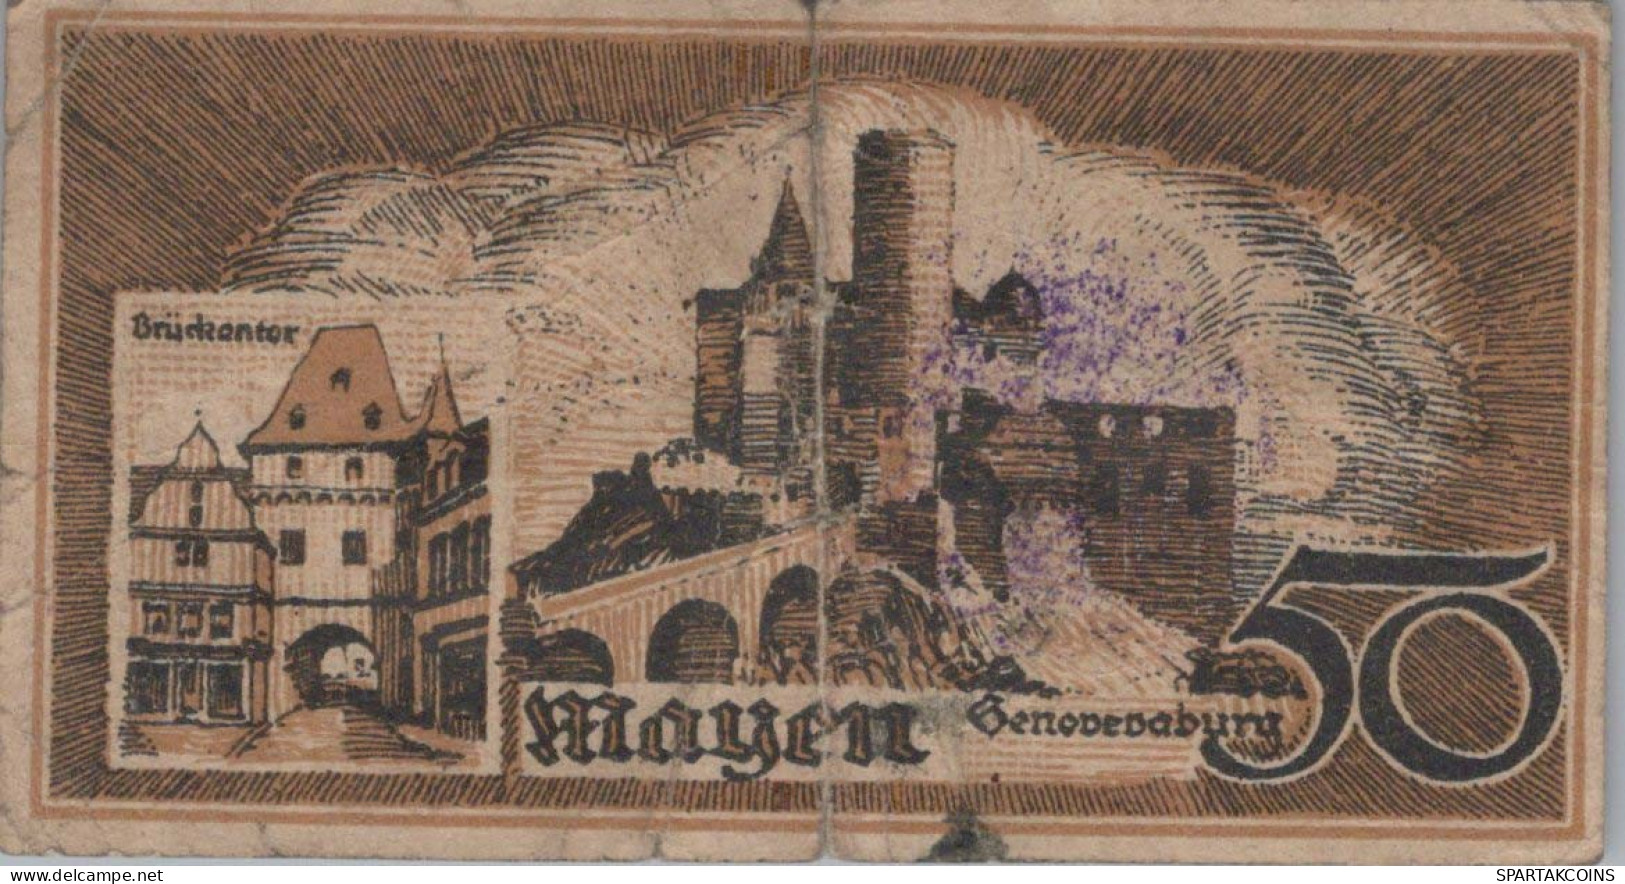 50 PFENNIG 1921 Stadt MAYEN Rhine DEUTSCHLAND Notgeld Banknote #PG434 - [11] Local Banknote Issues